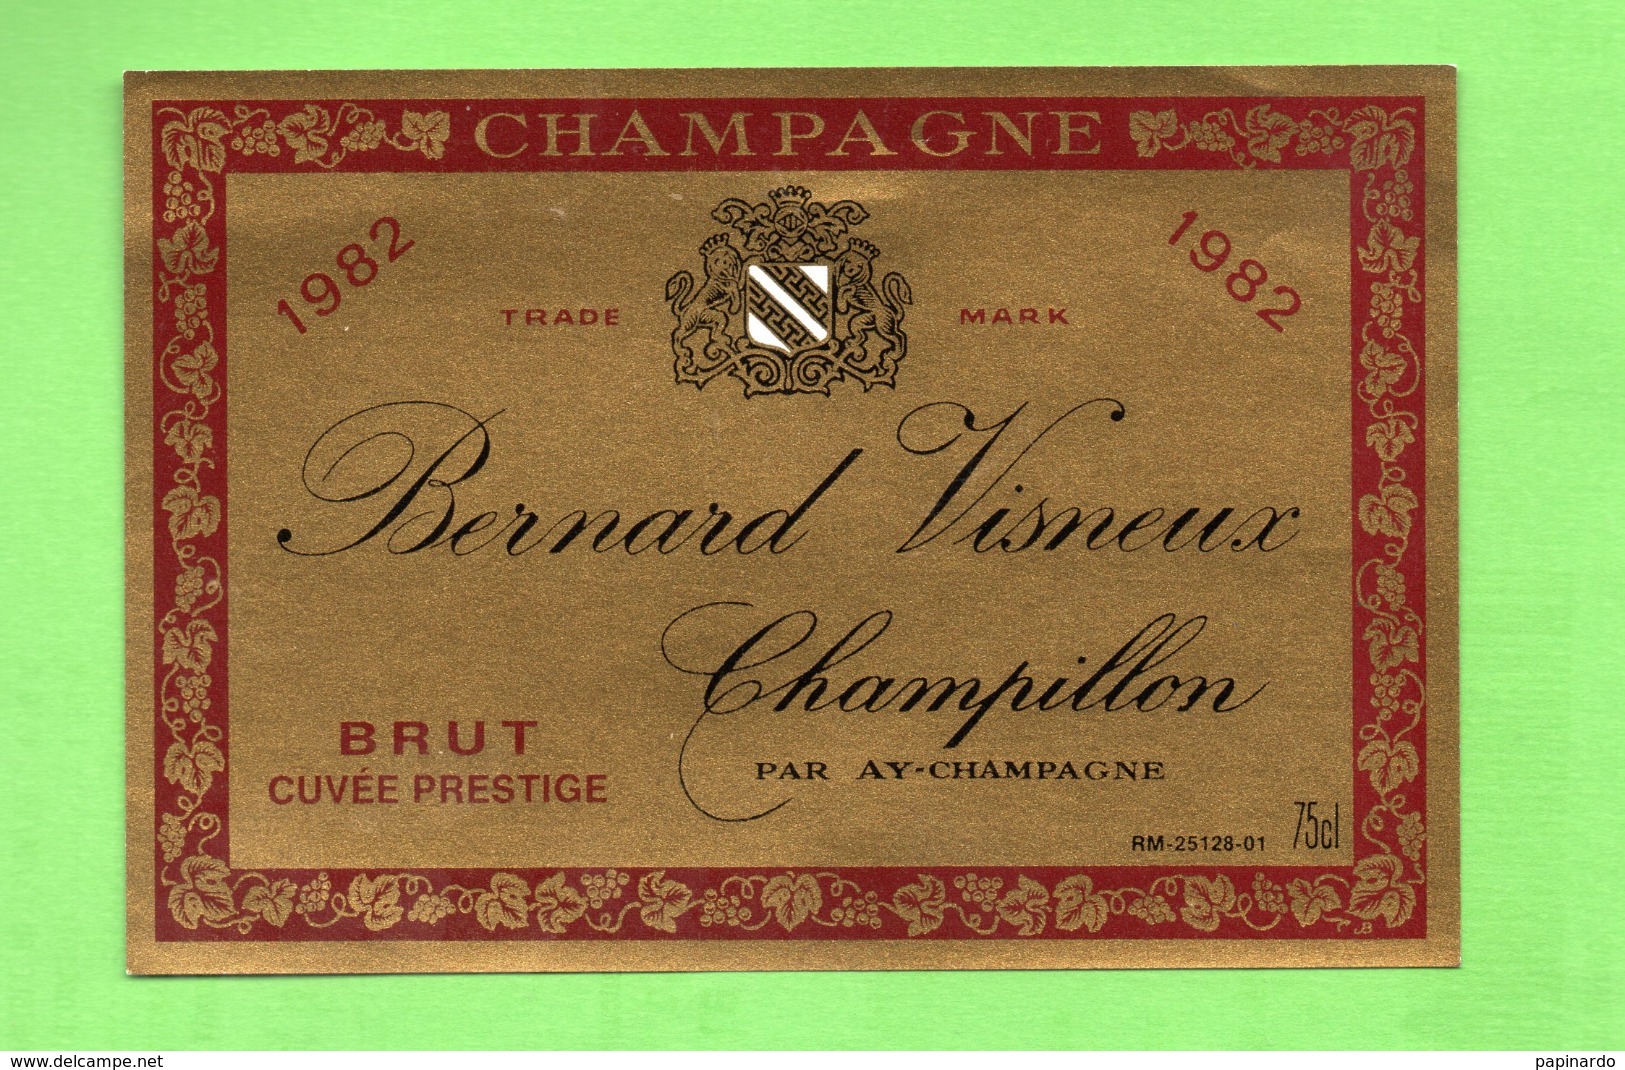 ETIQUETTE DE CHAMPAGNE "   Bernard  VISNEUX - Champagne